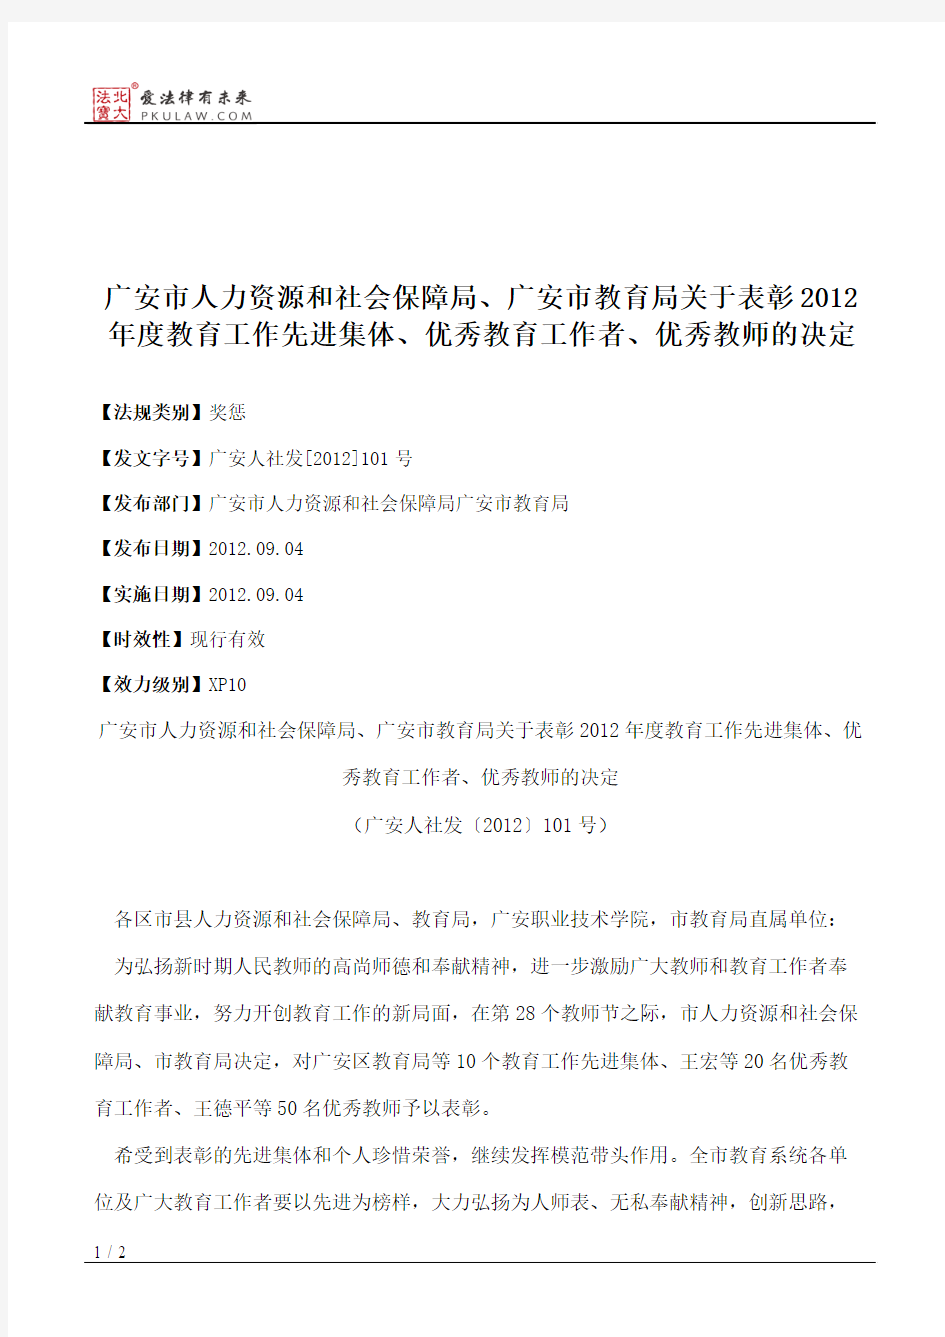 广安市人力资源和社会保障局、广安市教育局关于表彰2012年度教育